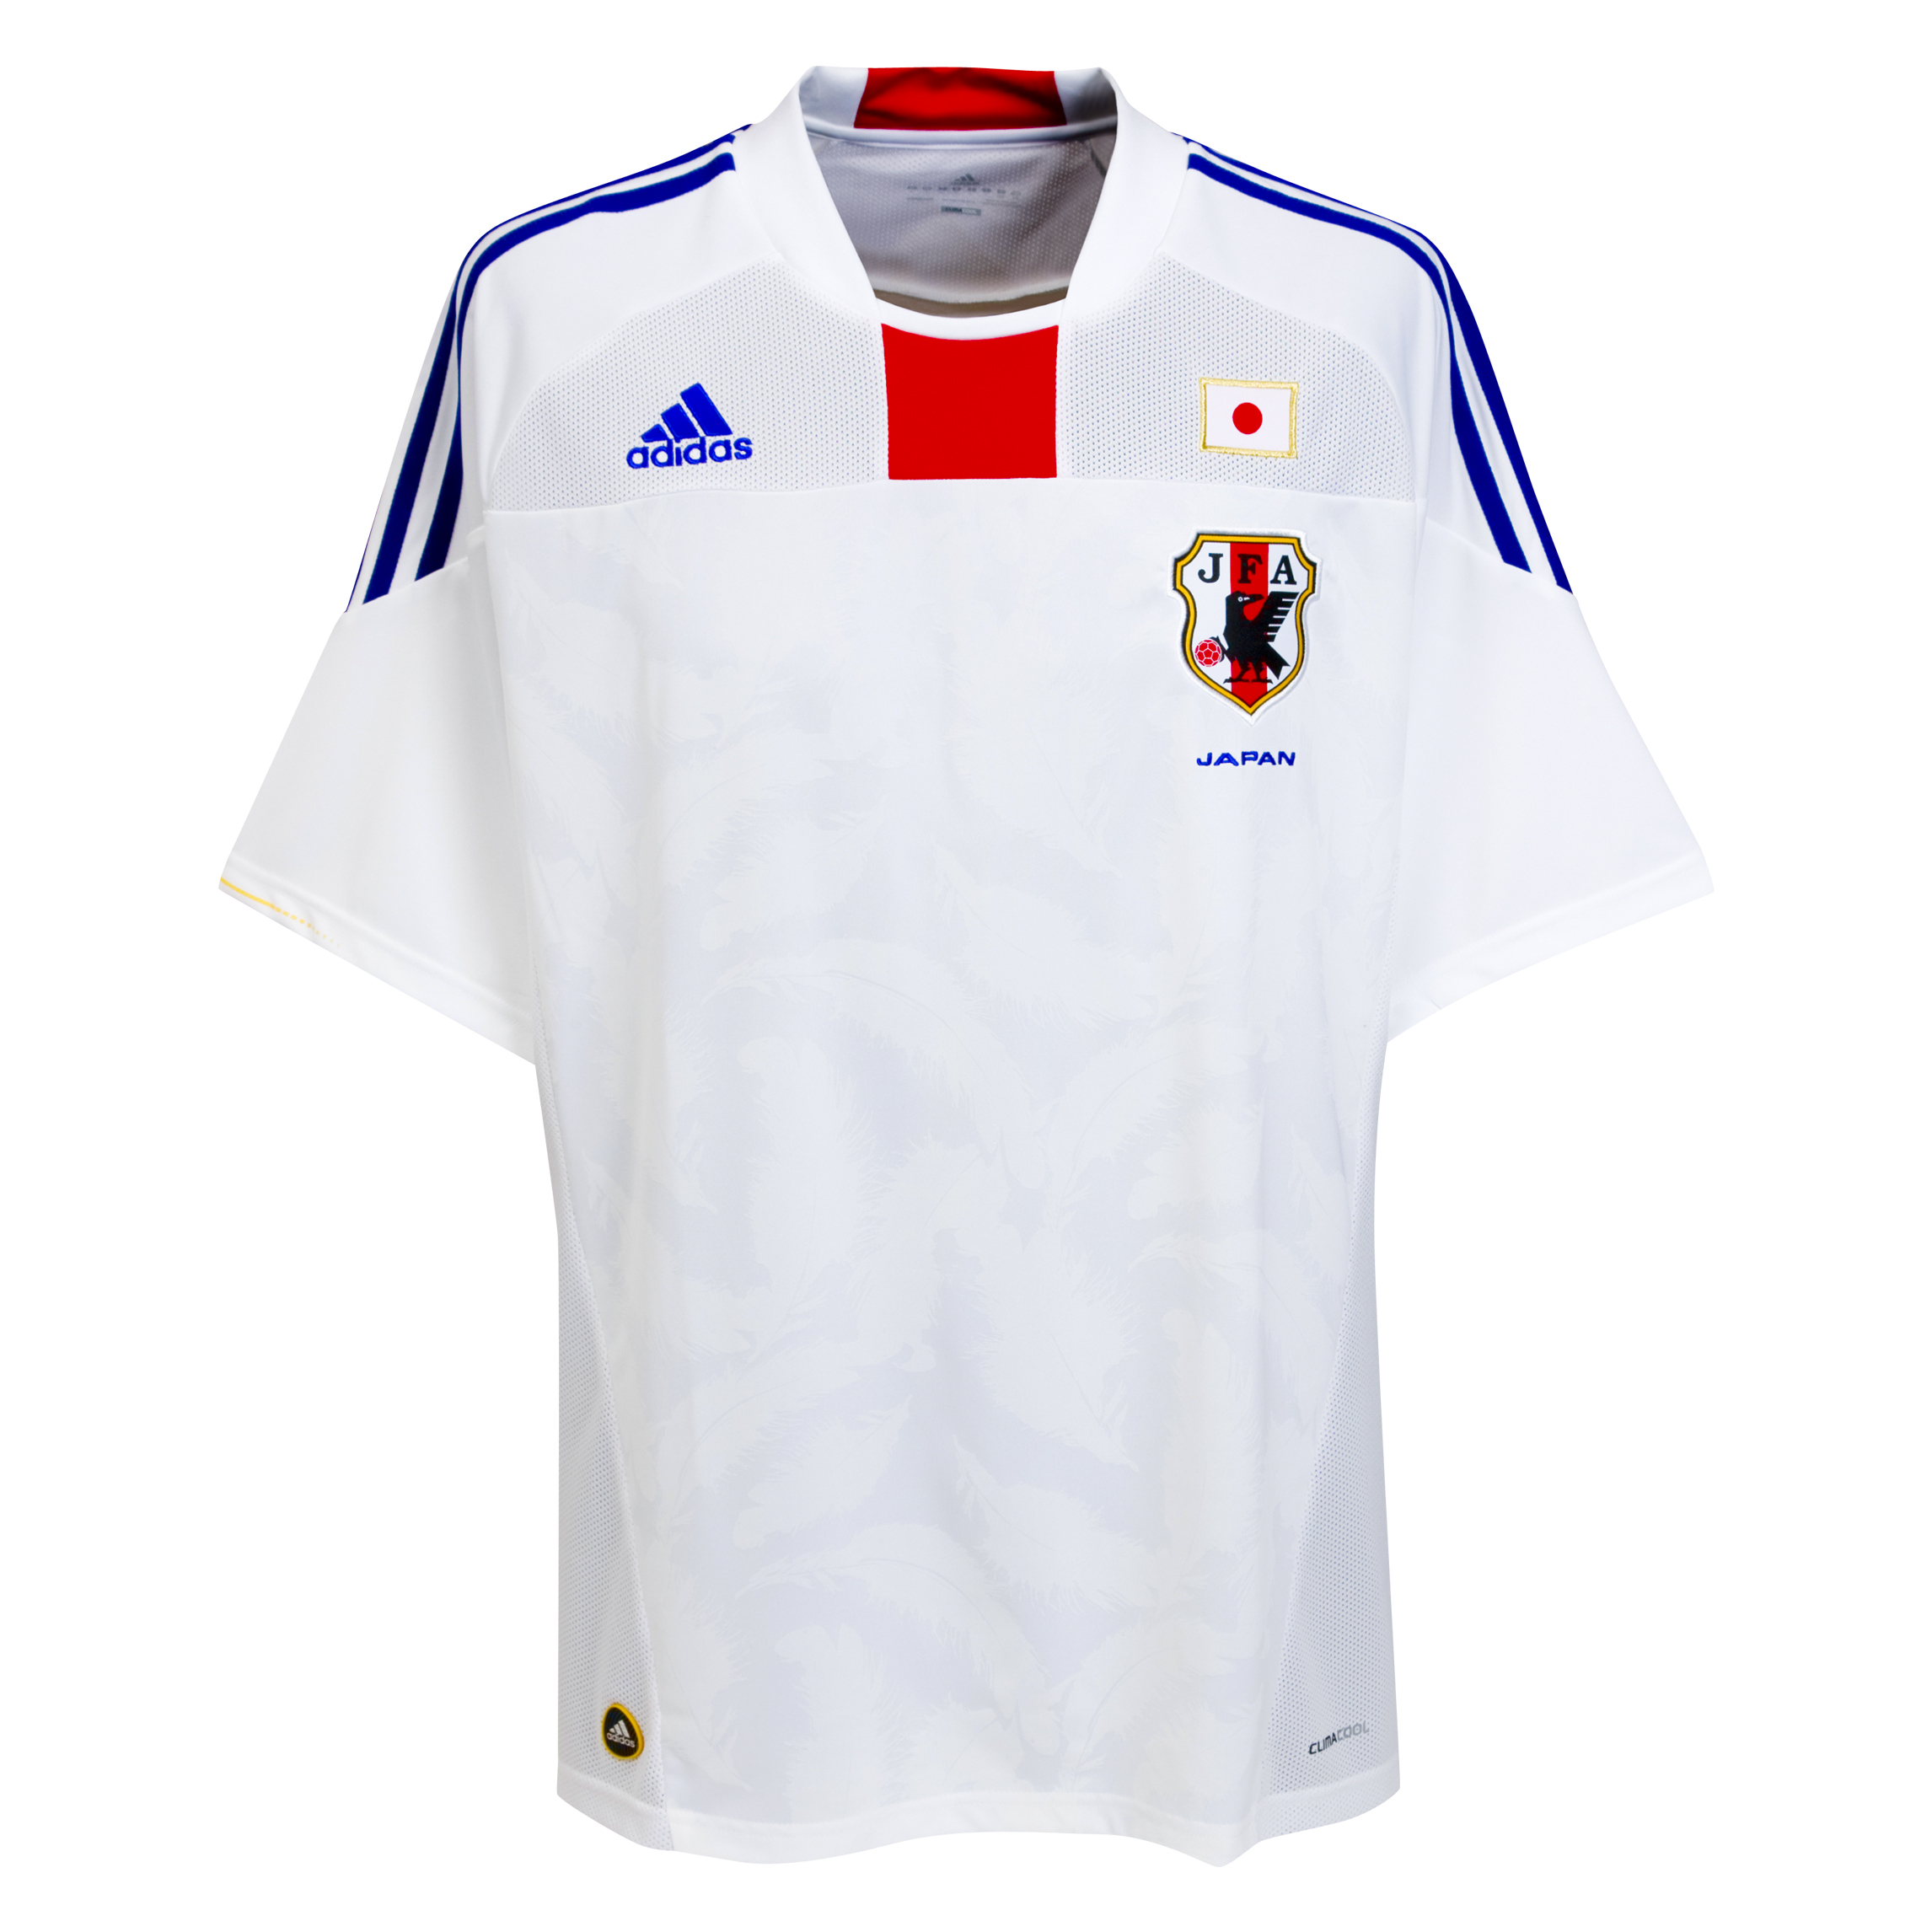 ملابس الفرق في كأس العالم  2010 Kb-66941